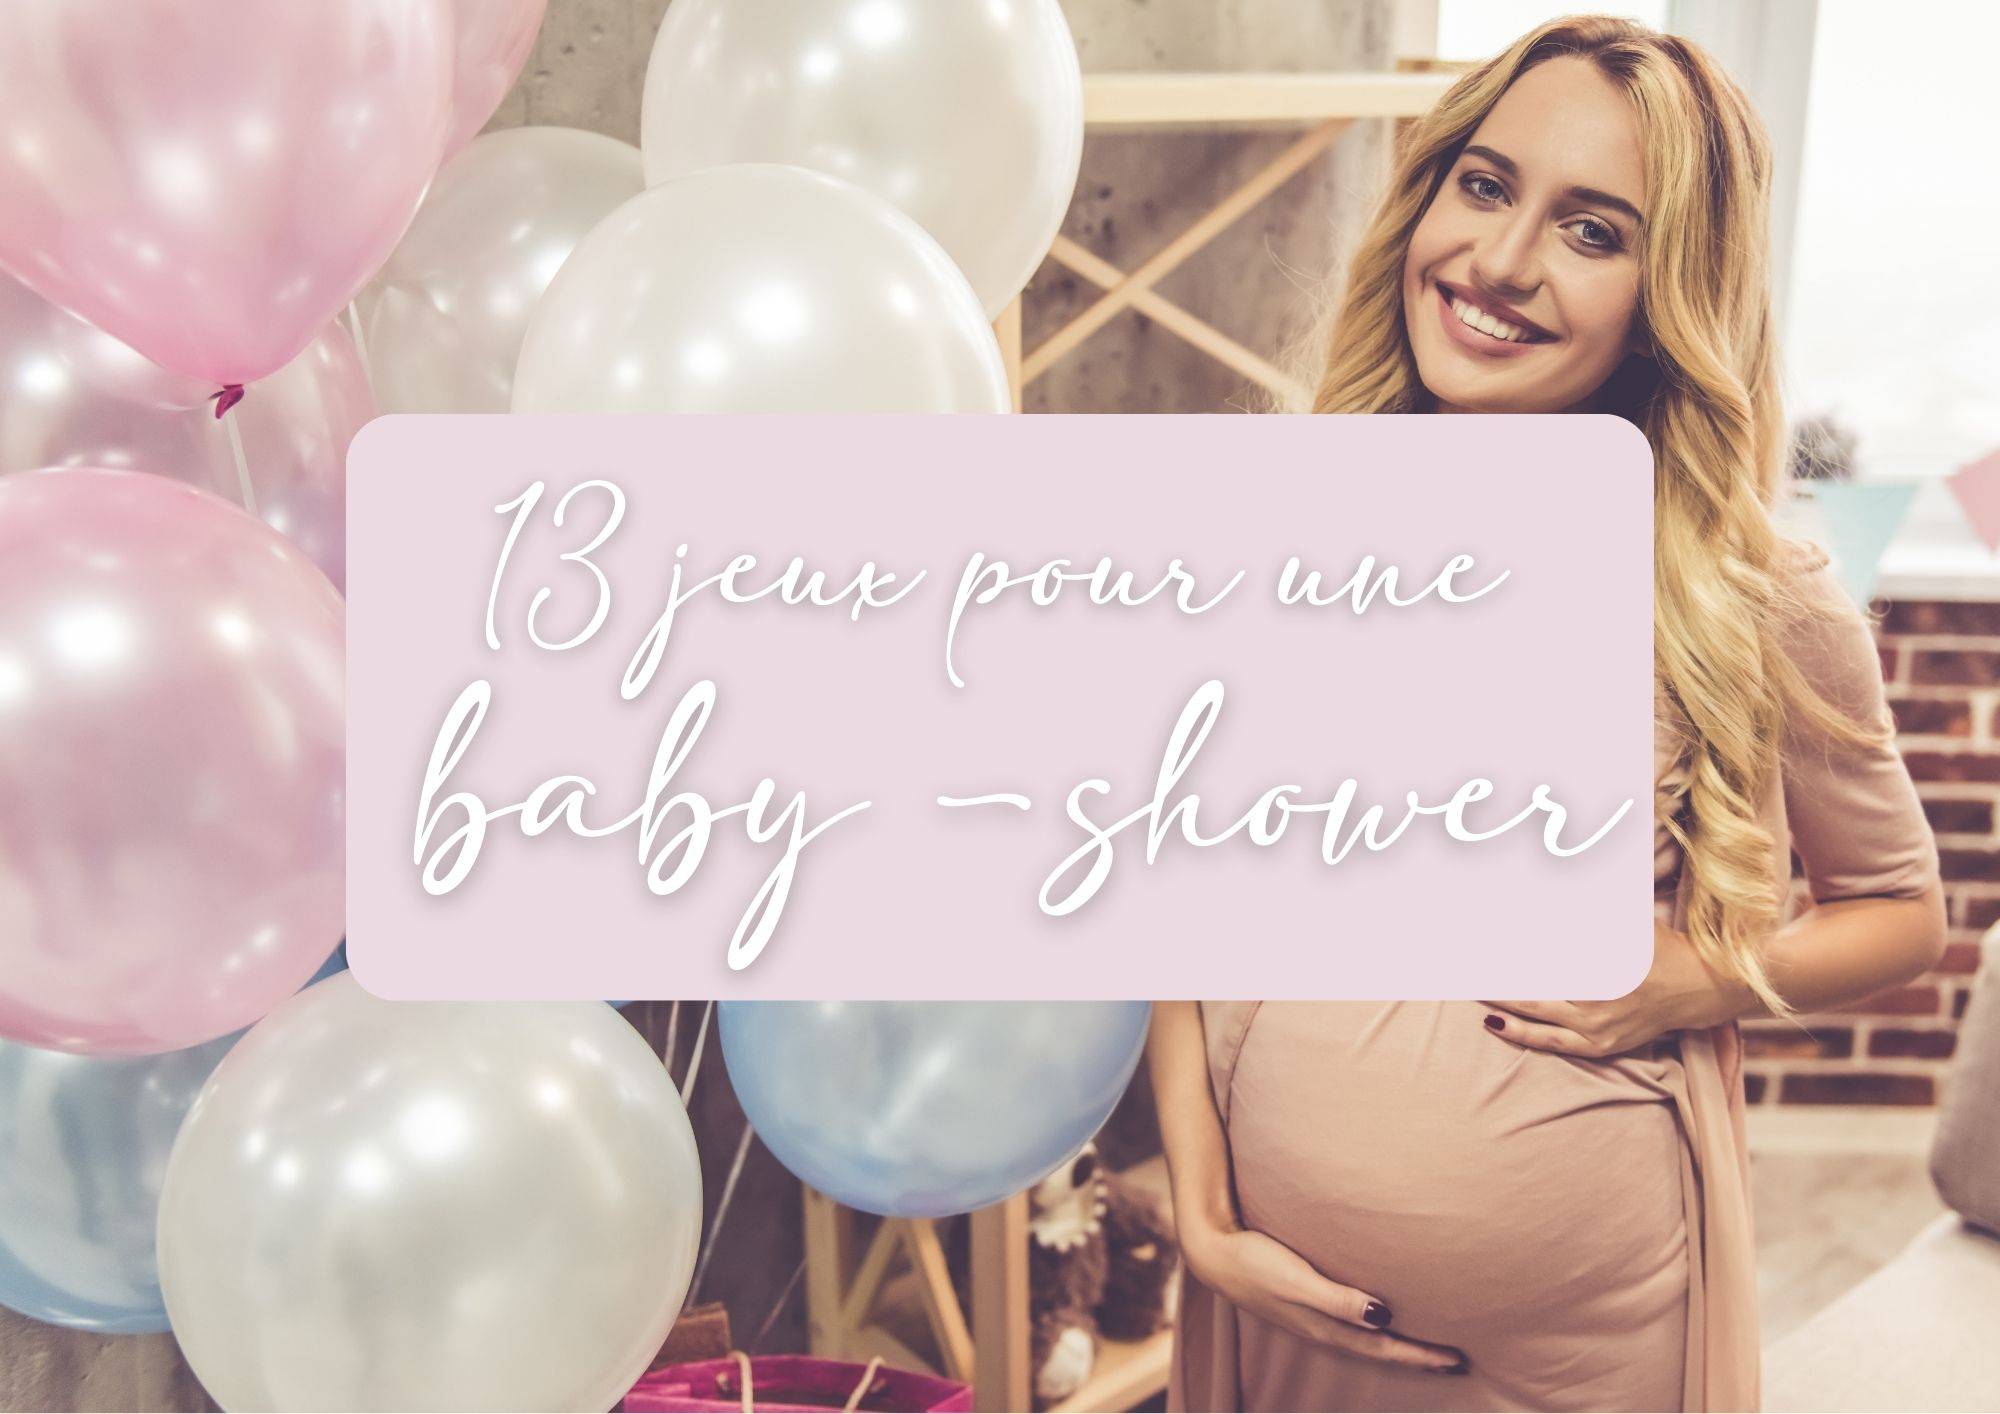 Bar à bonbons baby shower - Baby Shower - accessoires, décorations, cadeaux  pour une baby shower réussie